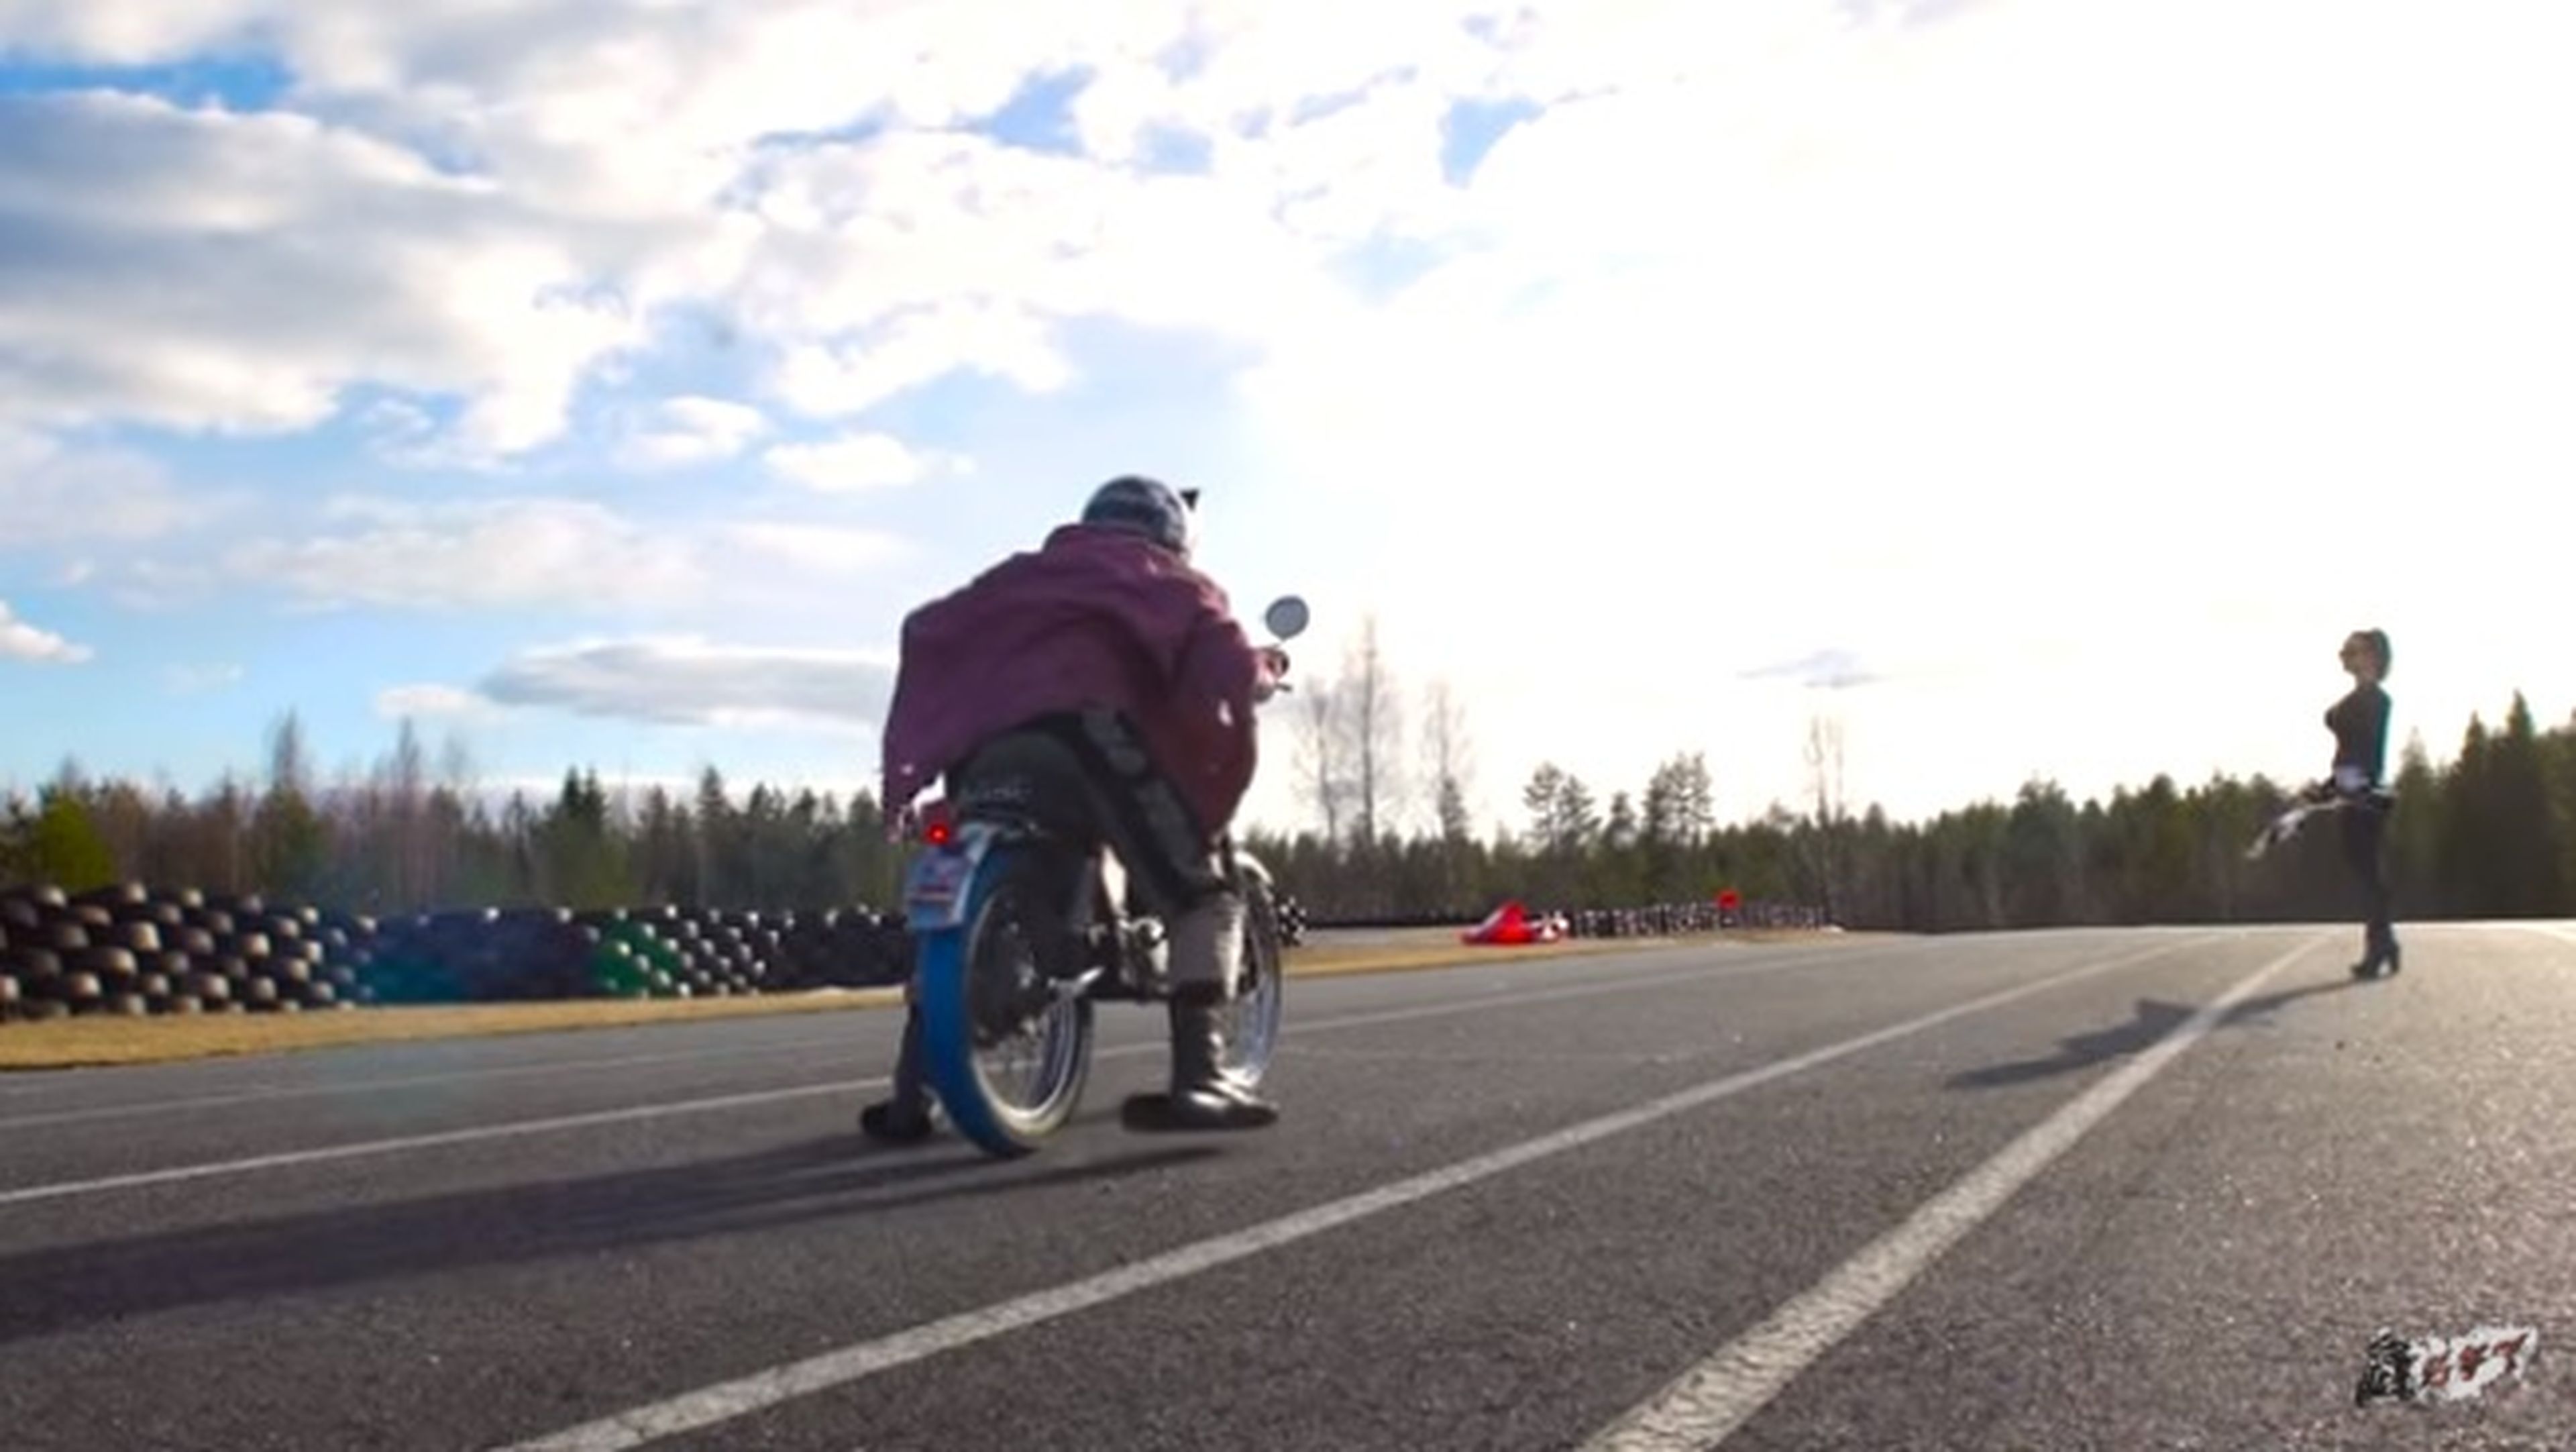 Vídeo: ¡Derrapando con una moto de 1,5 CV!